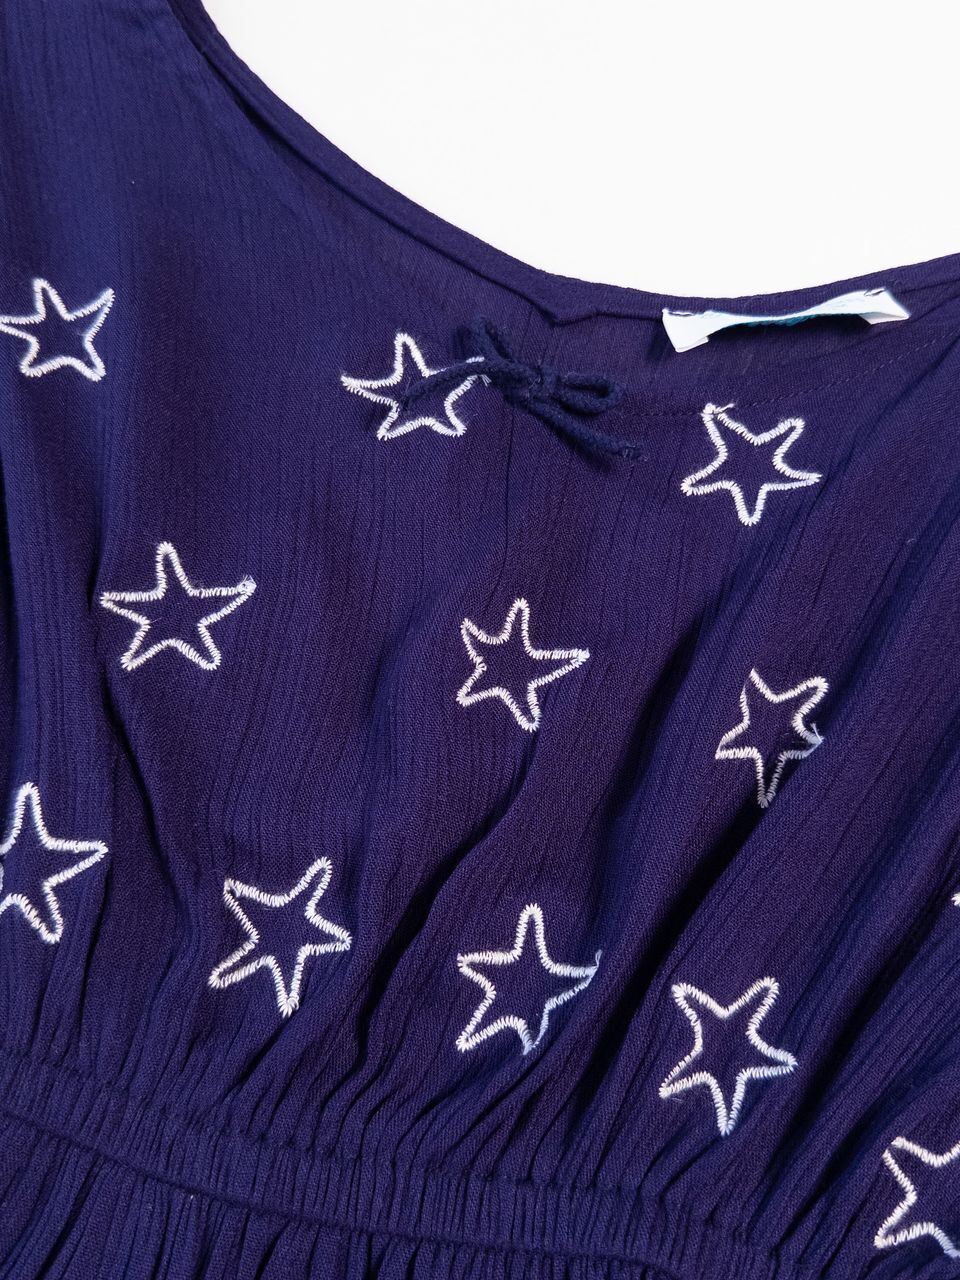 Платье-туника в поясе резинка цвет фиолетовый принт Звезды на рост 104 см 3-4 года Primark